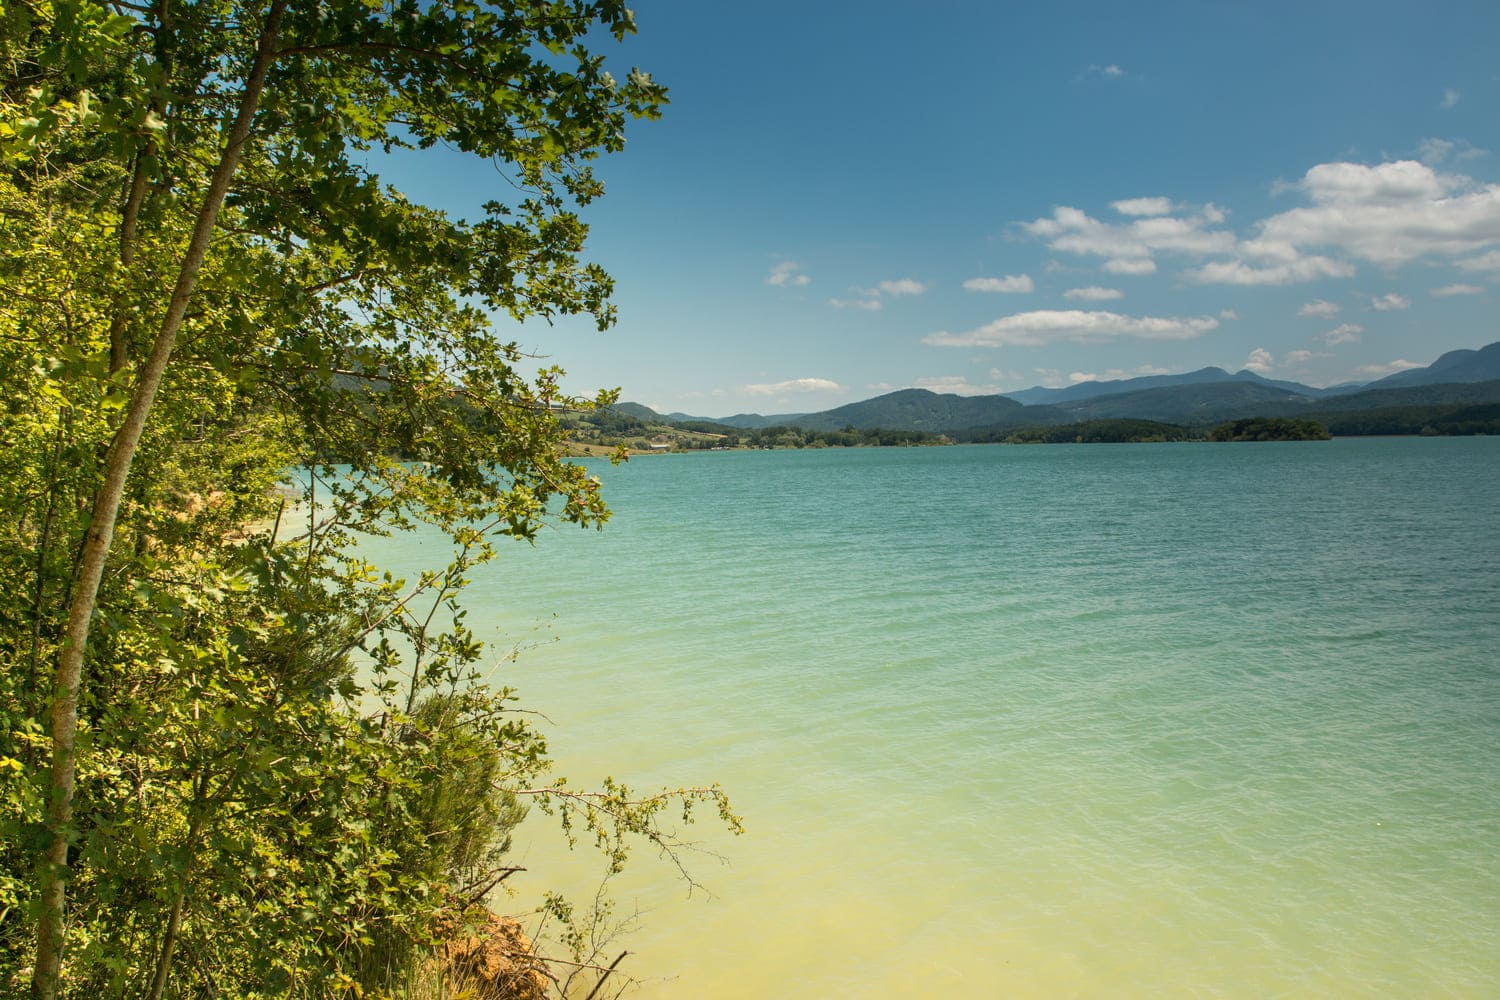 Randonnée lac de Montbel : eau azur, végétation et montagnes au loin